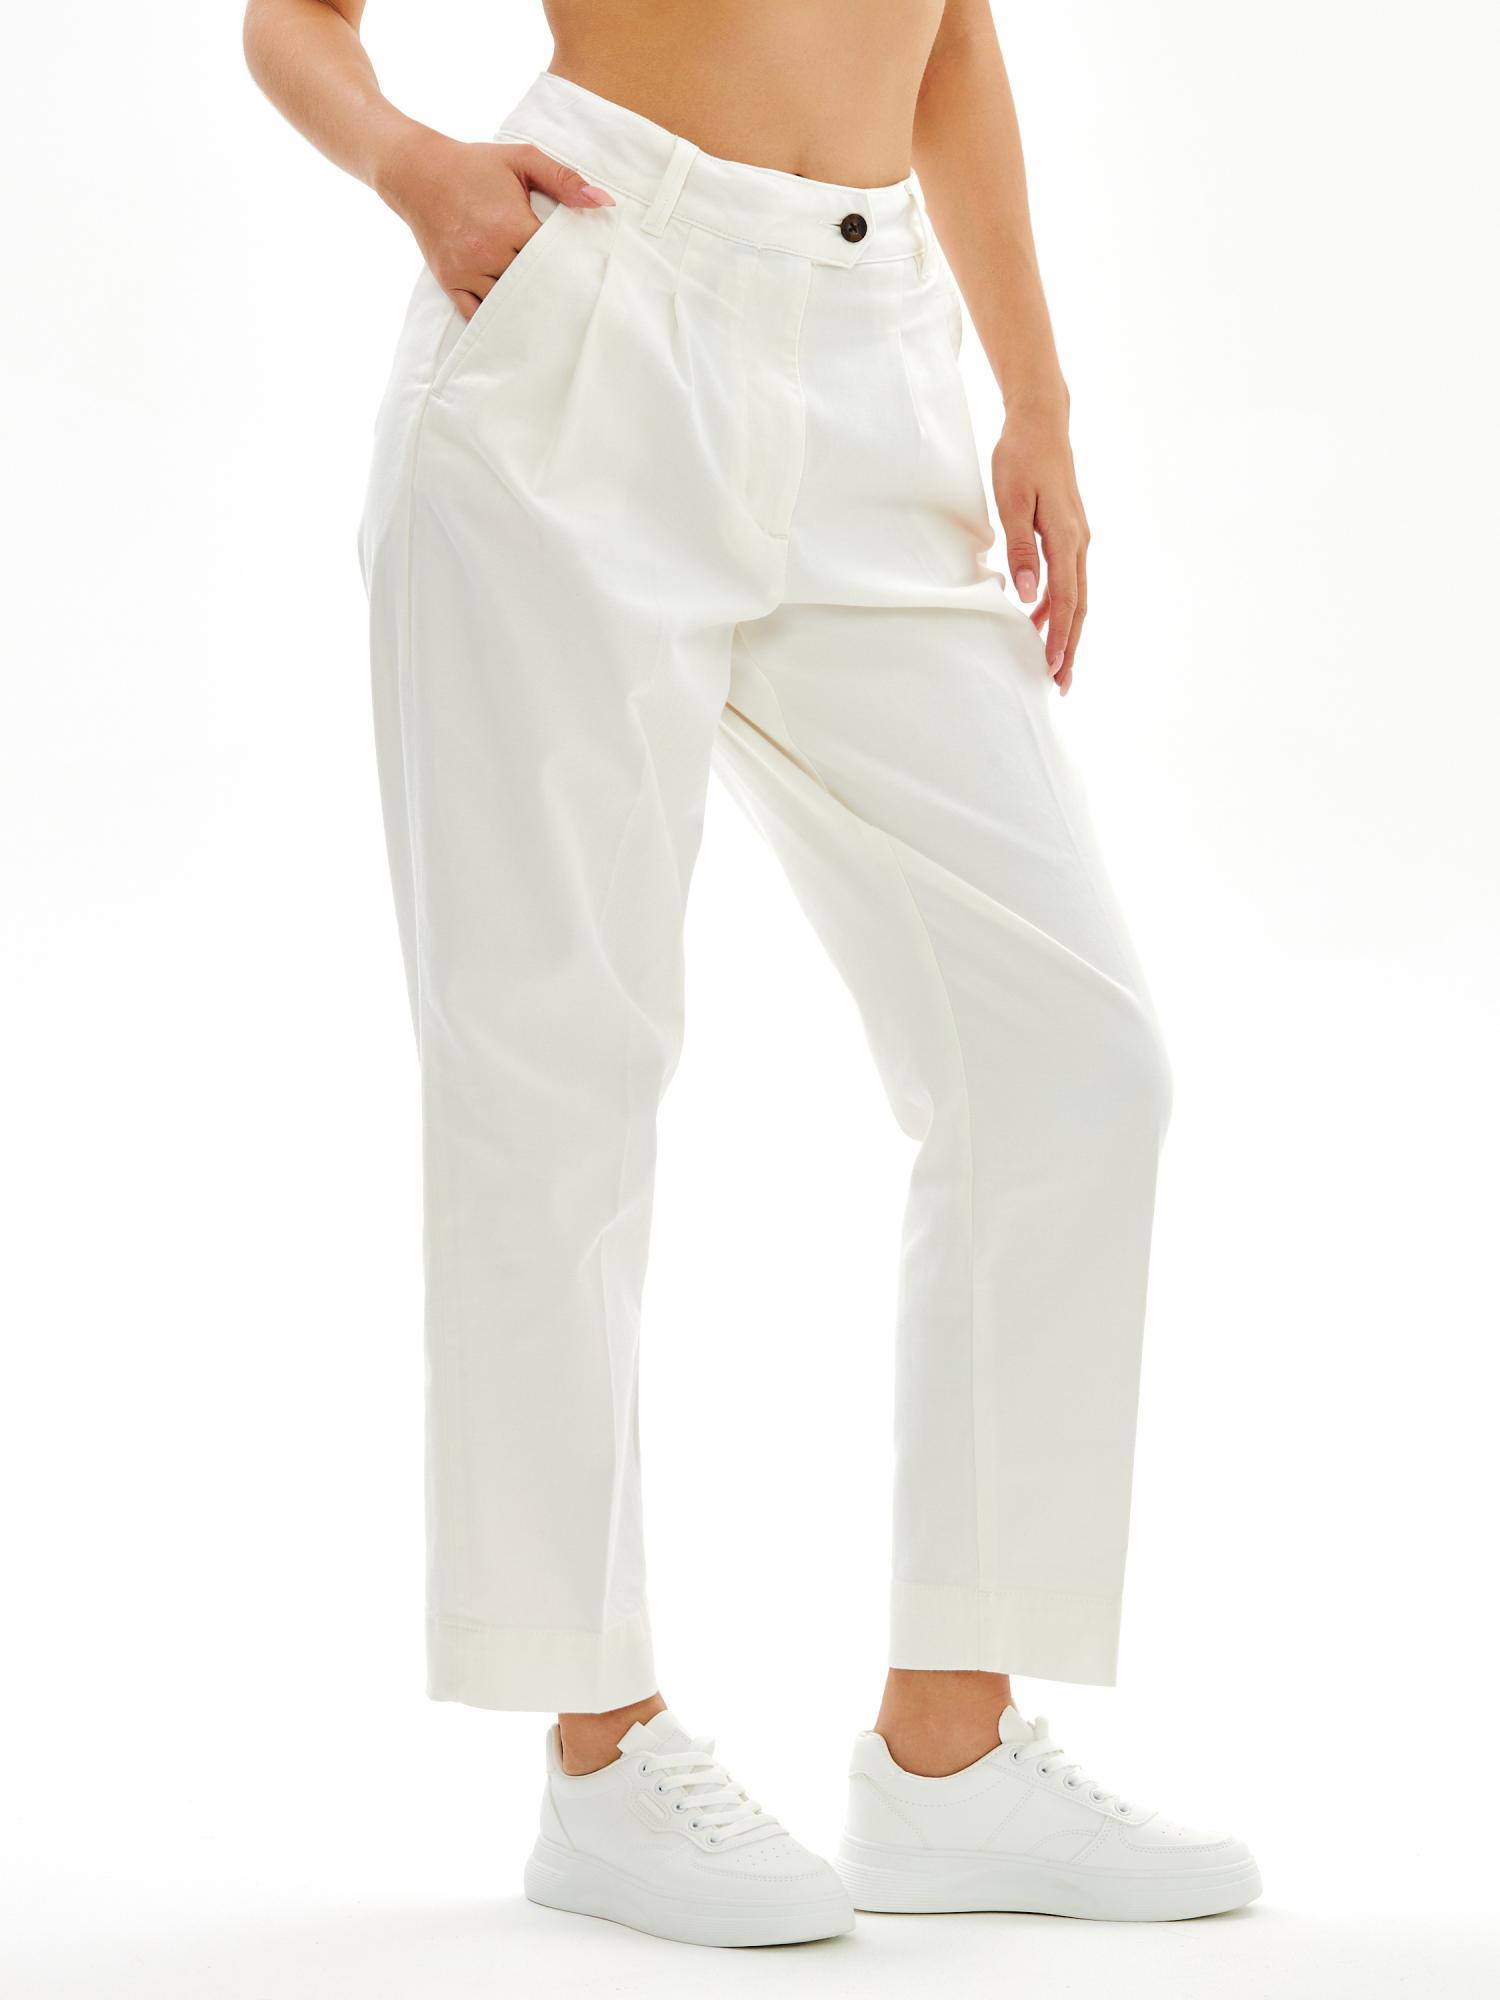 Женские брюки чинос Gant, белые, цвет белый, размер 38 - фото 1